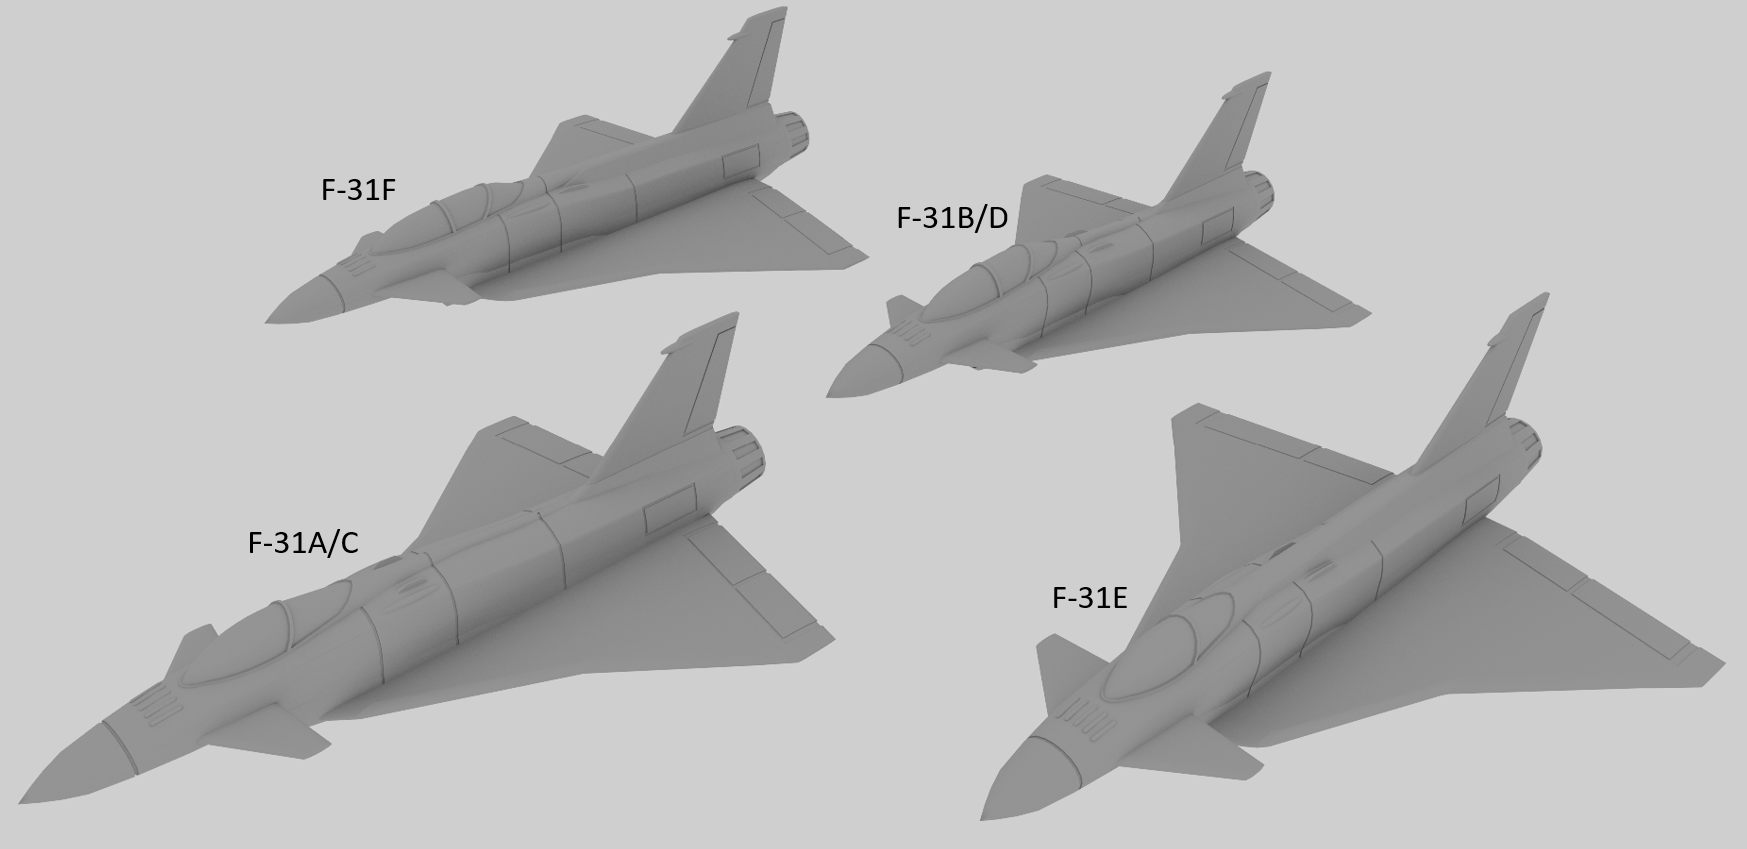 Image-02.png Télécharger fichier STL gratuit Pack F-31 Thunder Shark (Rockwell-MBB X-31) • Design pour imprimante 3D, SpocksGlock